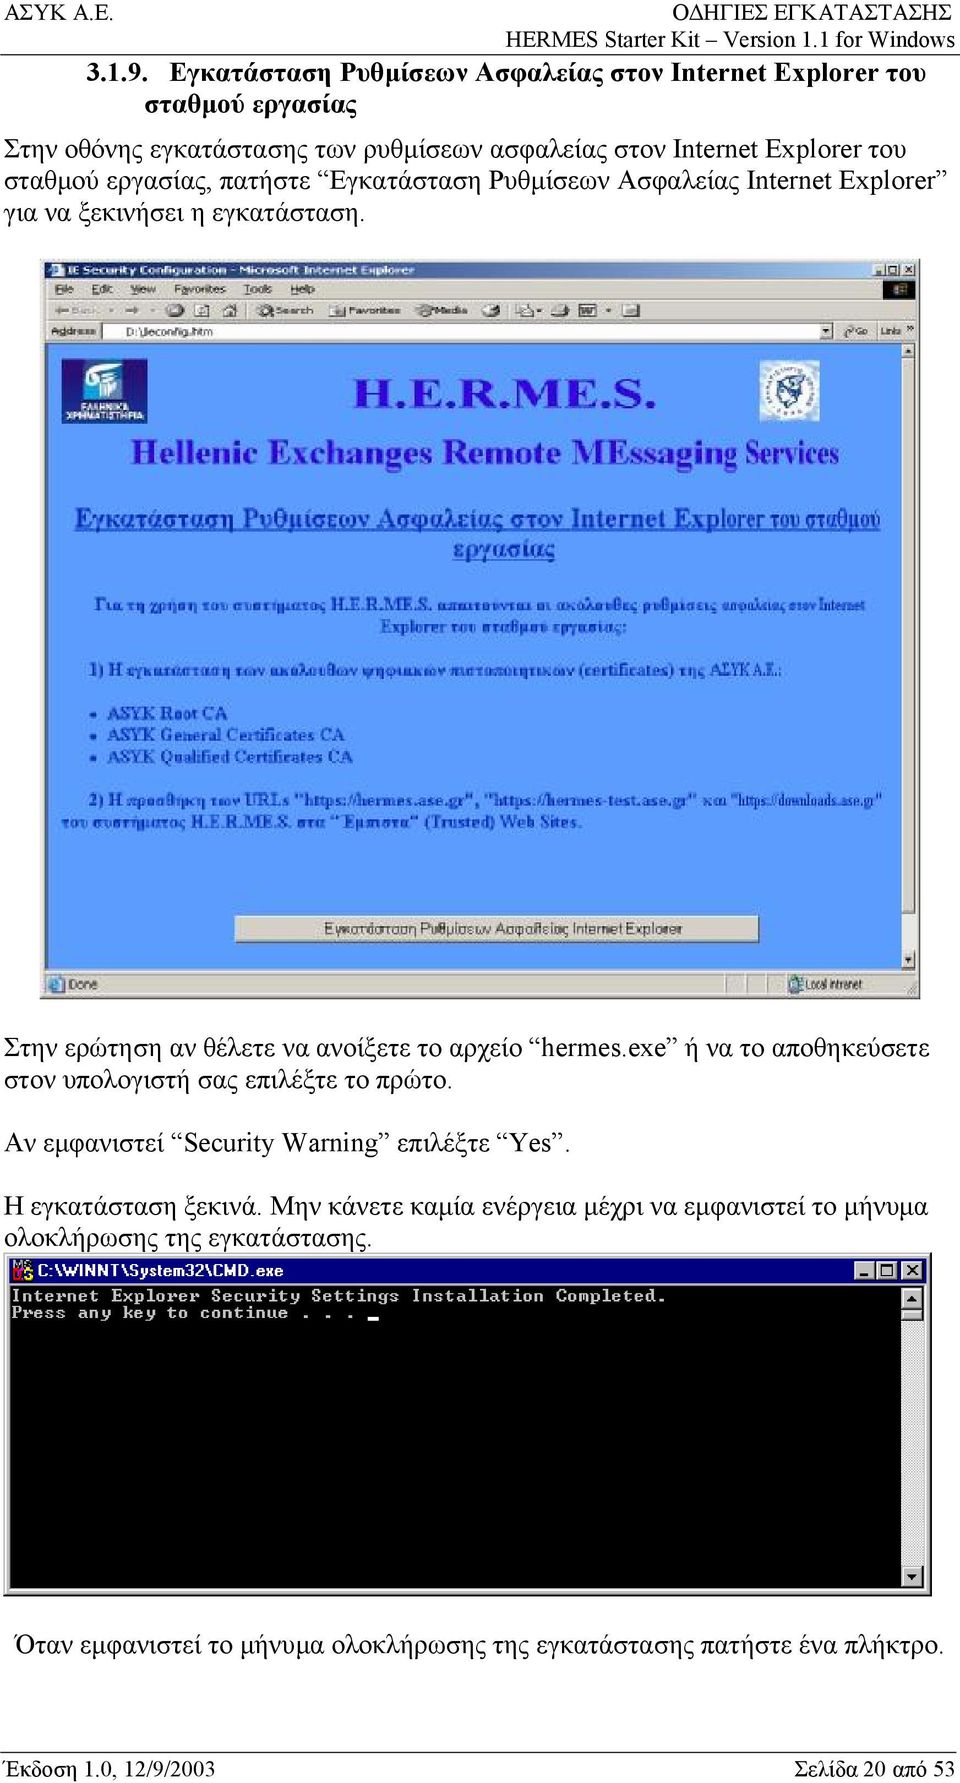 εργασίας, πατήστε Εγκατάσταση Ρυθμίσεων Ασφαλείας Internet Explorer για να ξεκινήσει η εγκατάσταση. Στην ερώτηση αν θέλετε να ανοίξετε το αρχείο hermes.